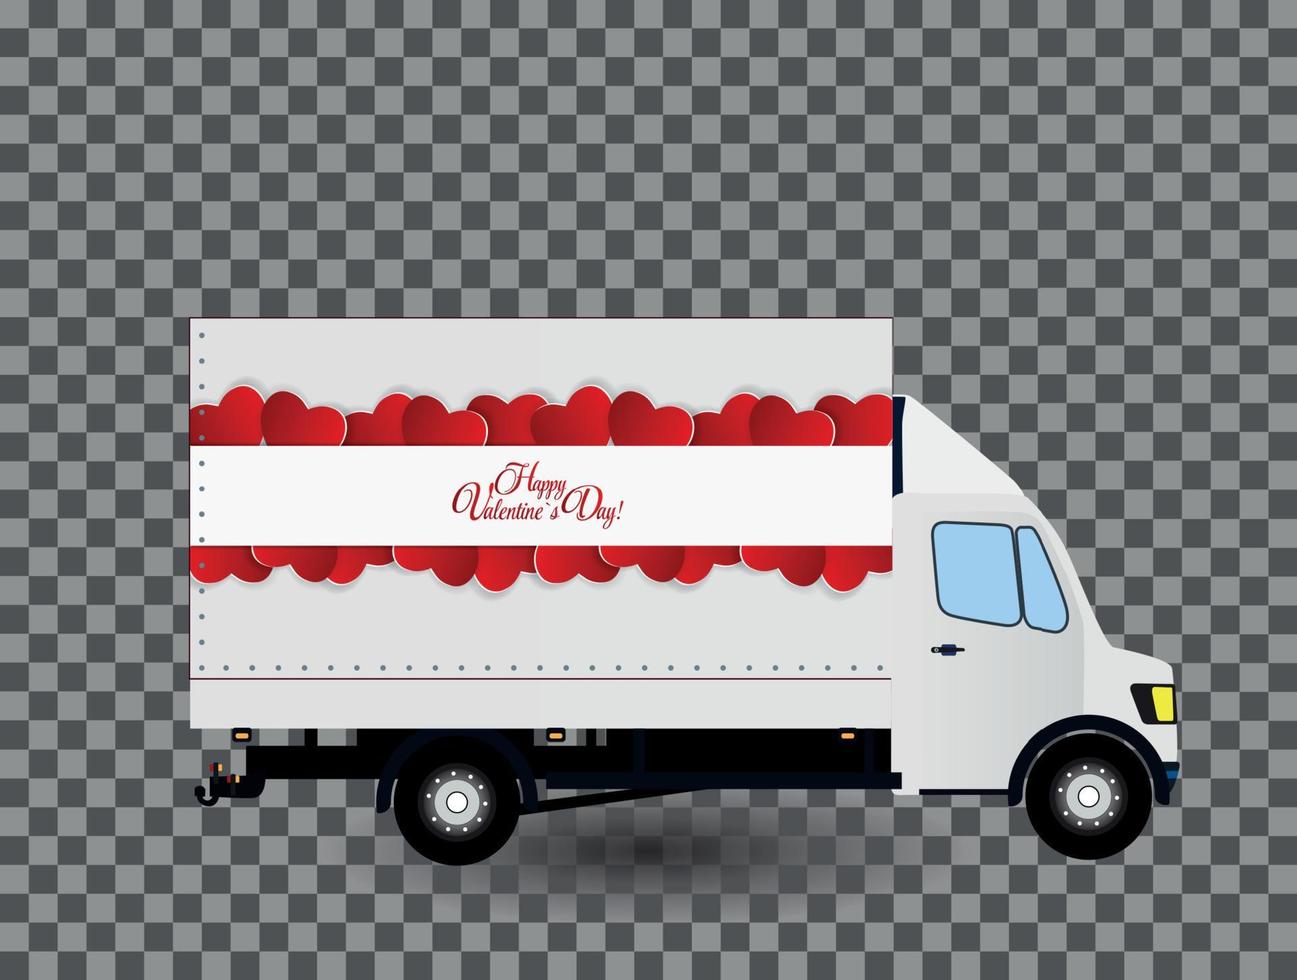 röd liten lastbil. silhuett. vektor illustration.